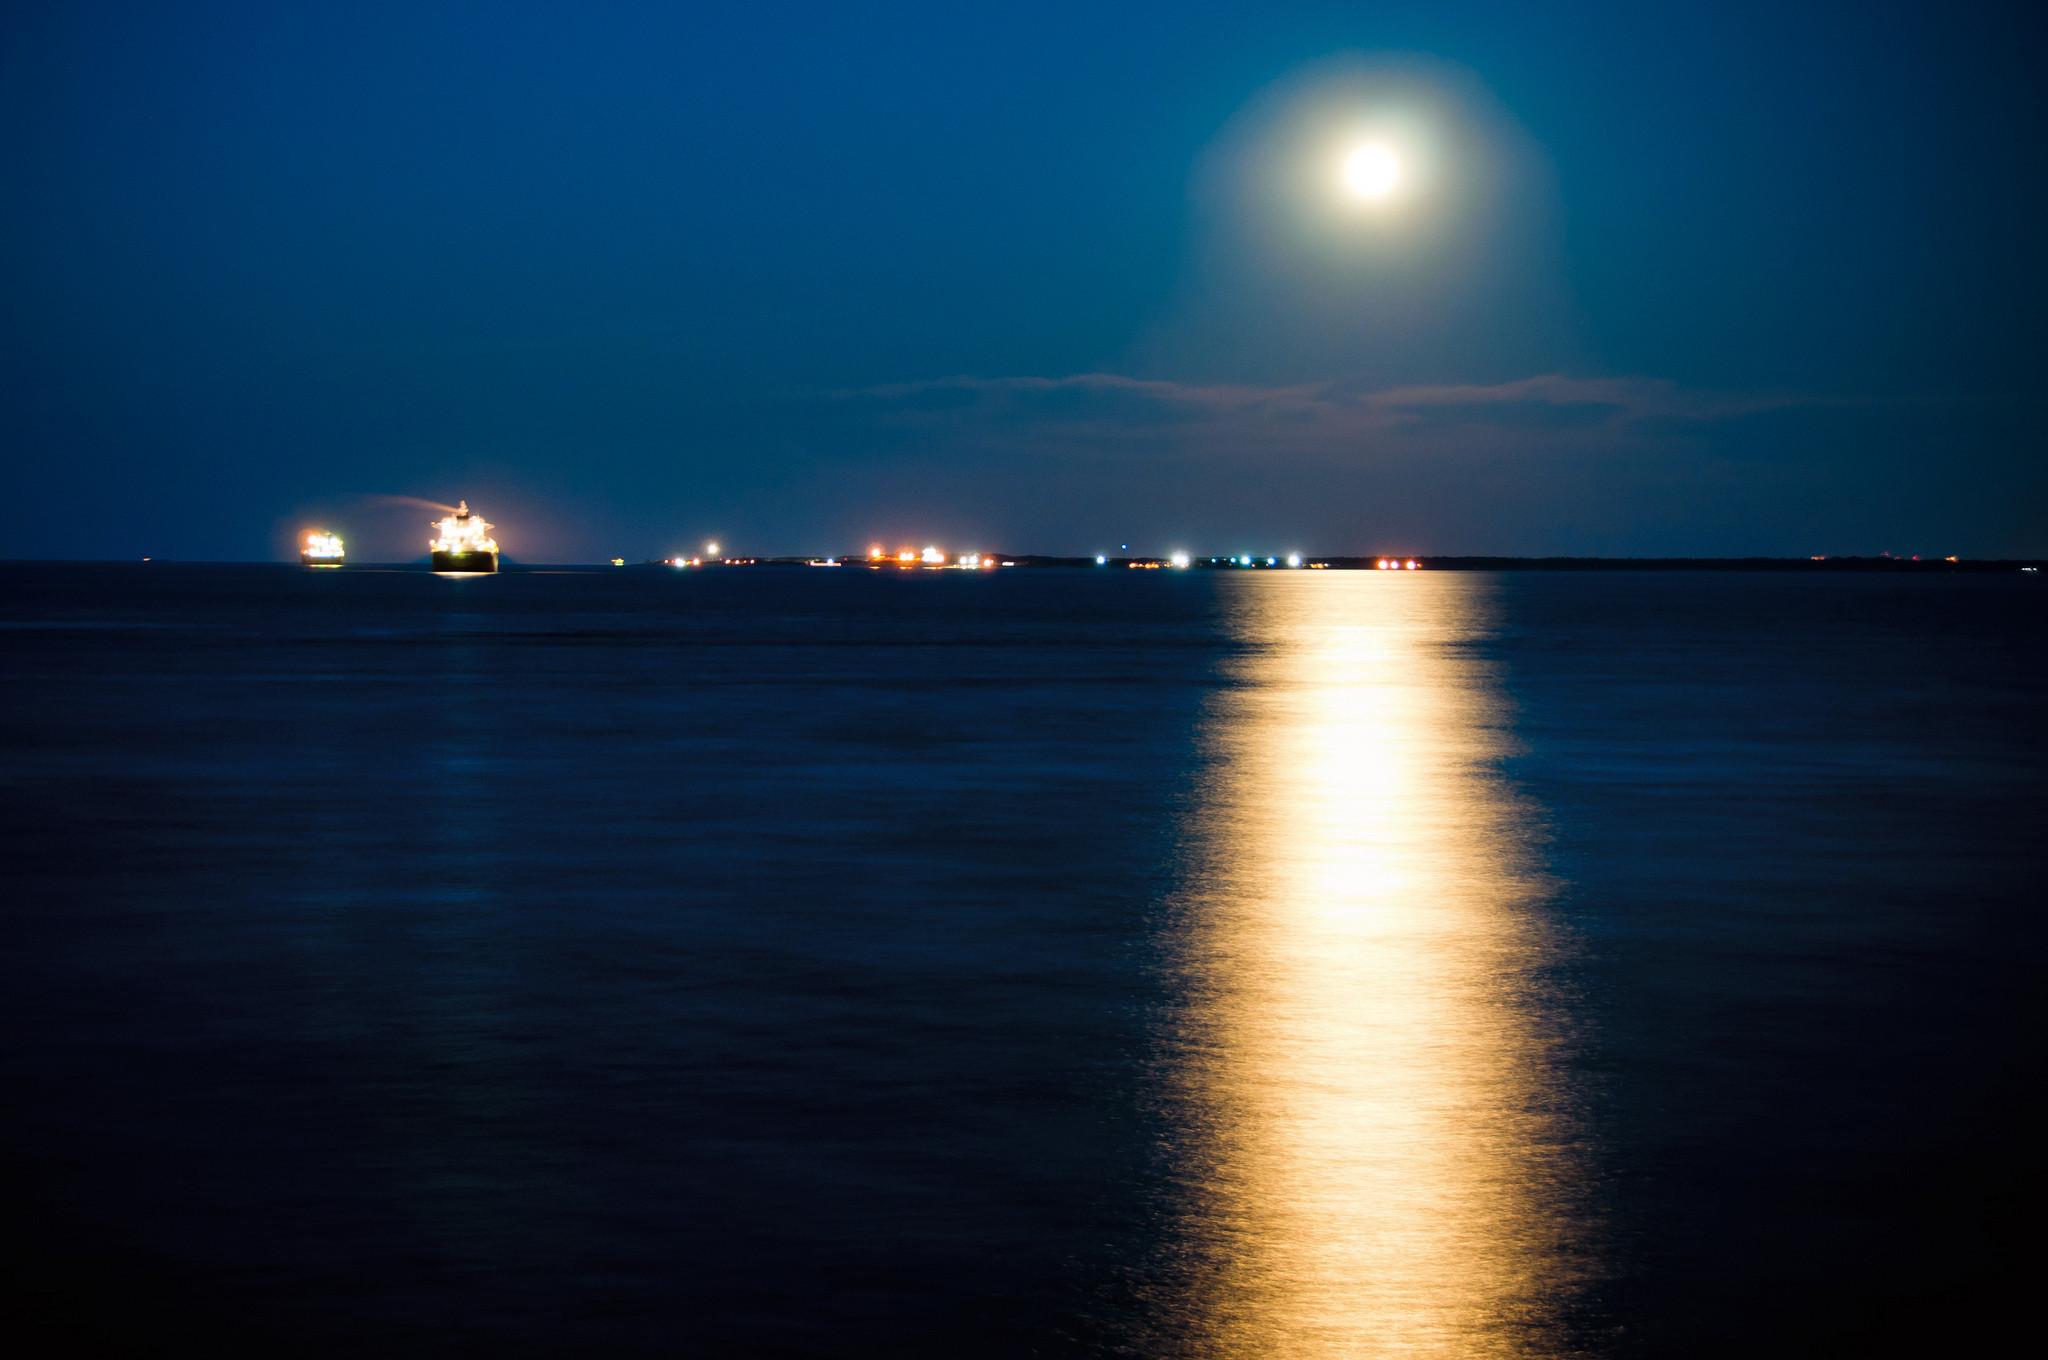 Вечером будет плюс. Ночное море. Ночь в море. Лунная дорожка на воде. Лунная дорожка на море.